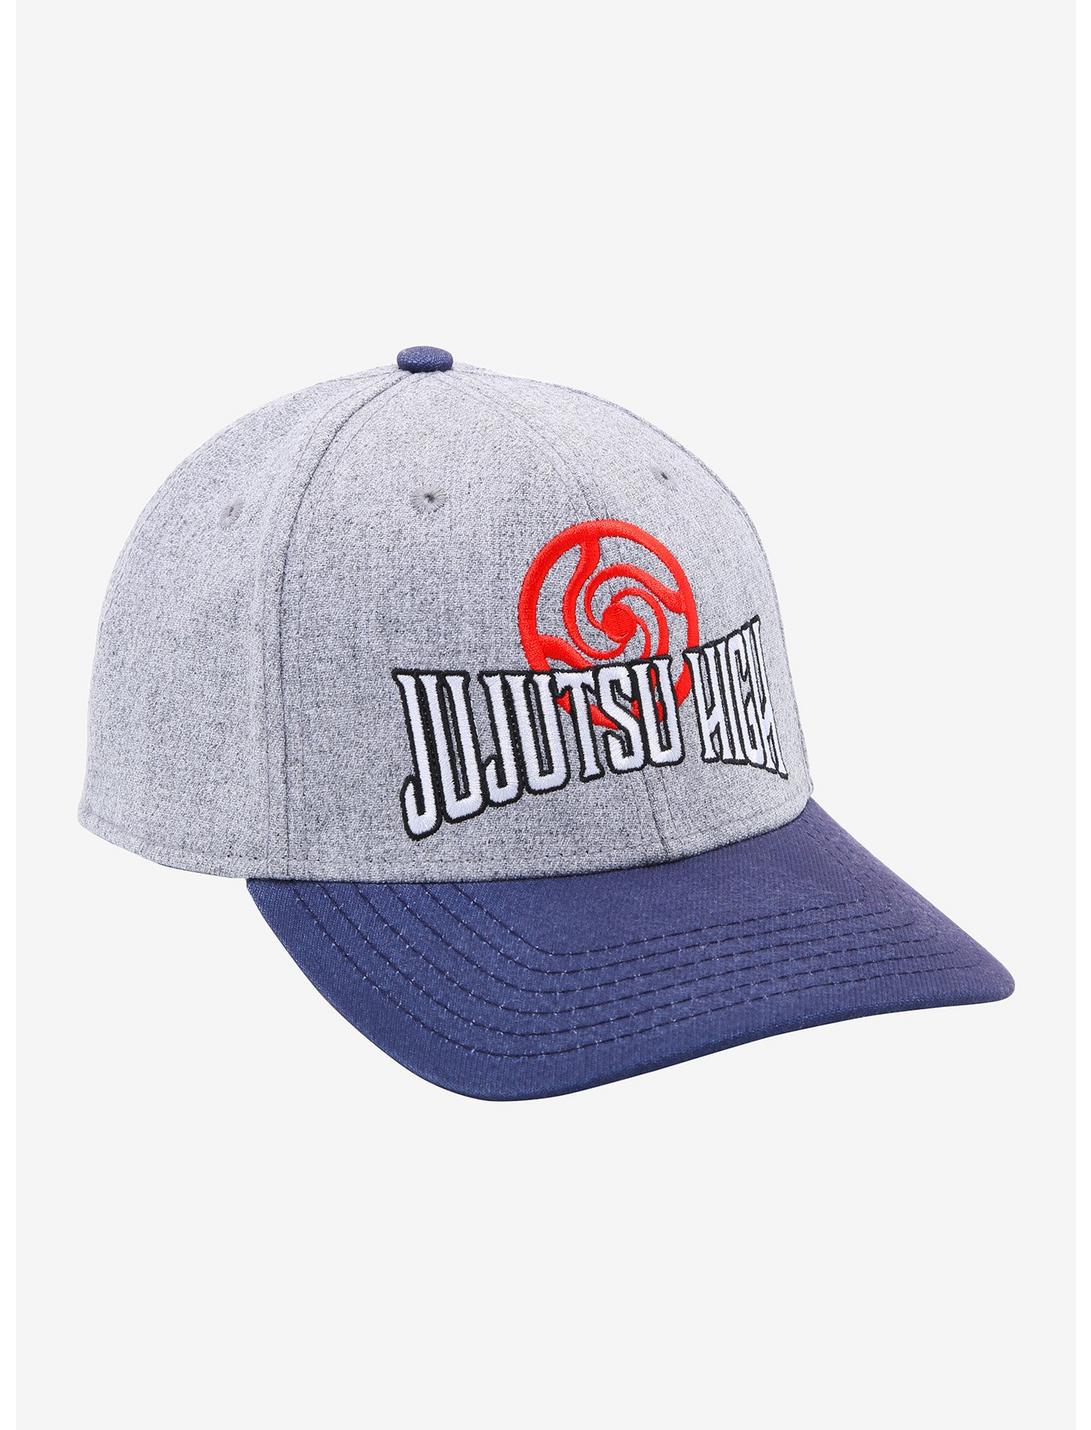 Jujutsu Kaisen Tokyo Jujutsu High School Snapback Hat, , hi-res